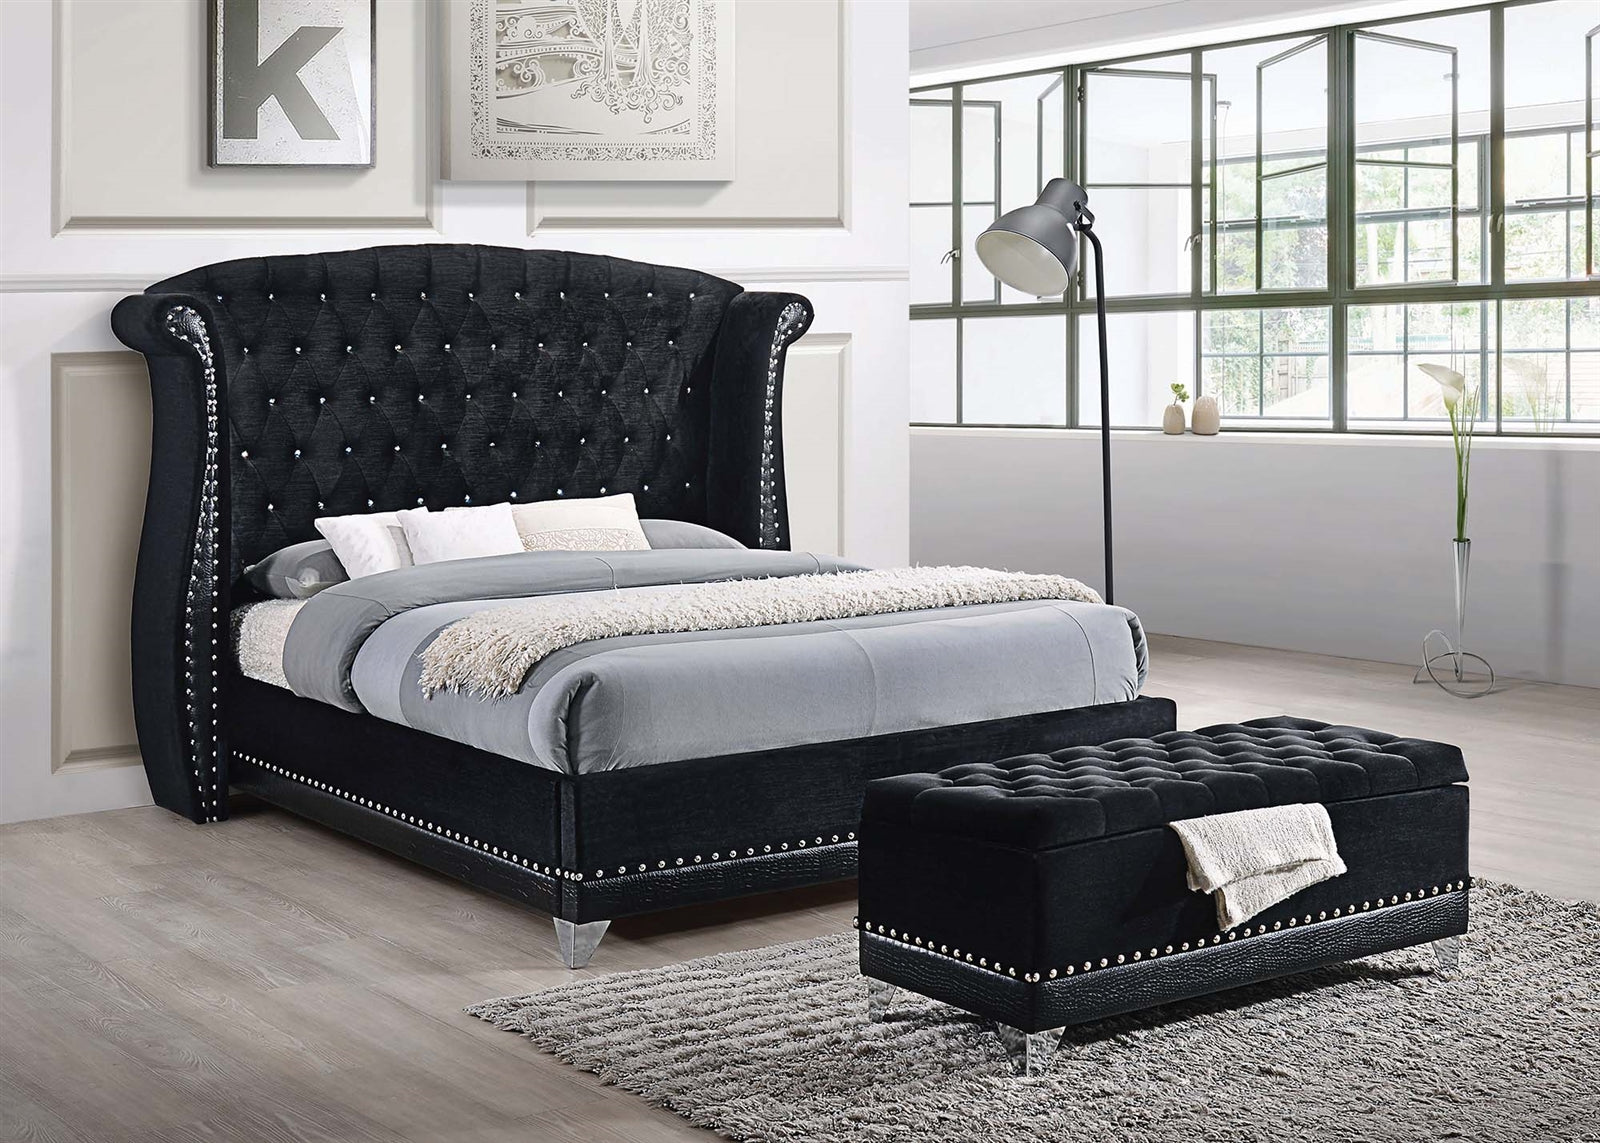 Barzini Modern Black Velvet King Bed with Silver Stud Trim & Chrome Feet